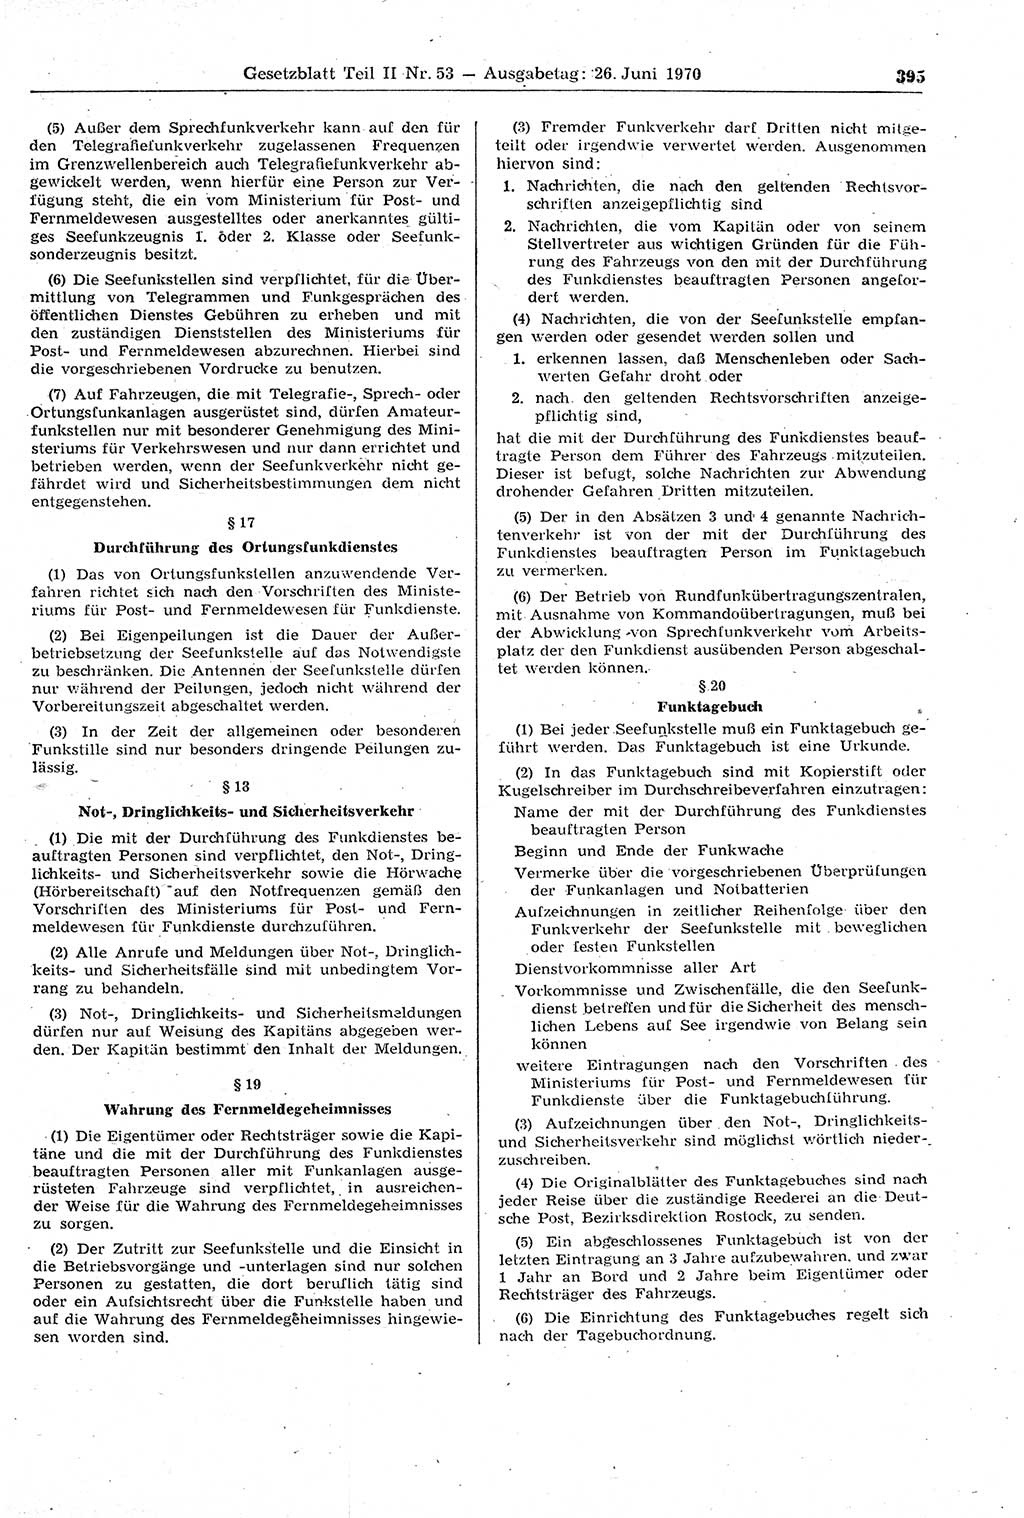 Gesetzblatt (GBl.) der Deutschen Demokratischen Republik (DDR) Teil ⅠⅠ 1970, Seite 395 (GBl. DDR ⅠⅠ 1970, S. 395)